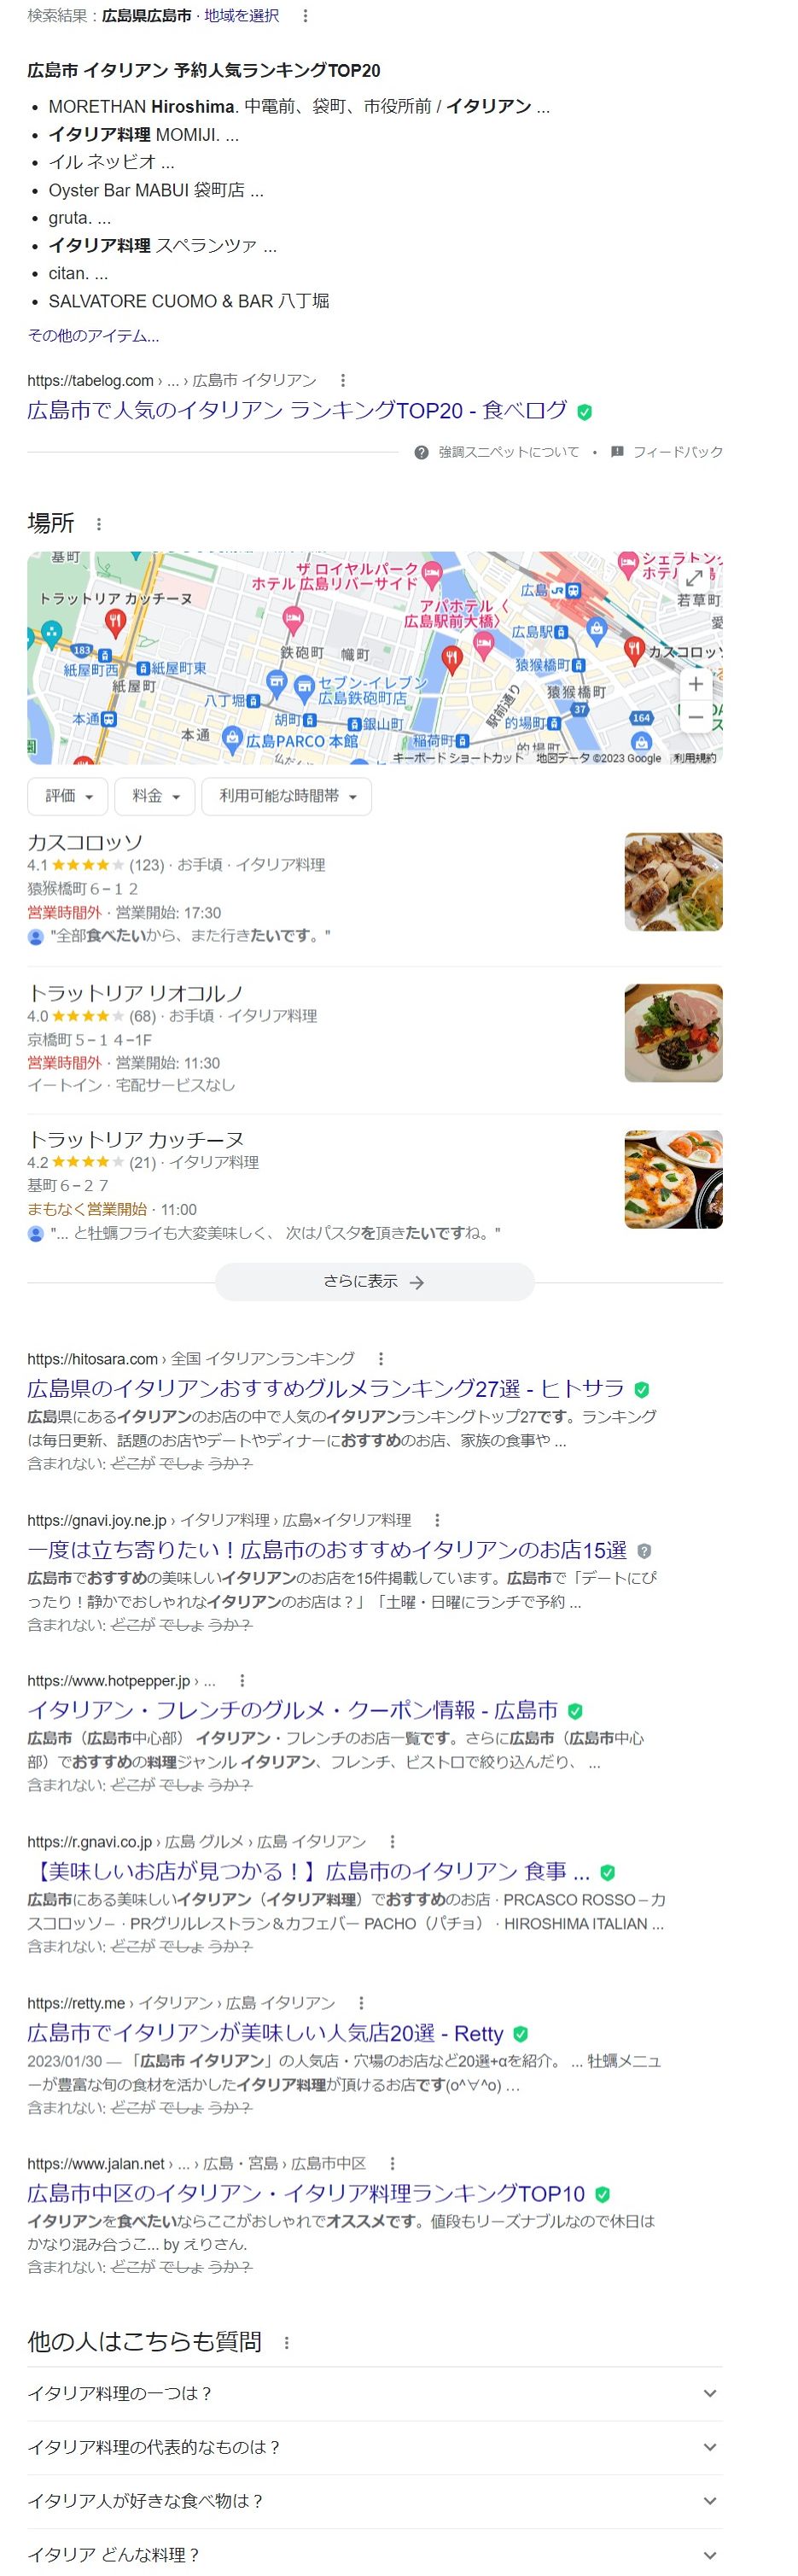 広島市のイタリアンレストランの検索結果